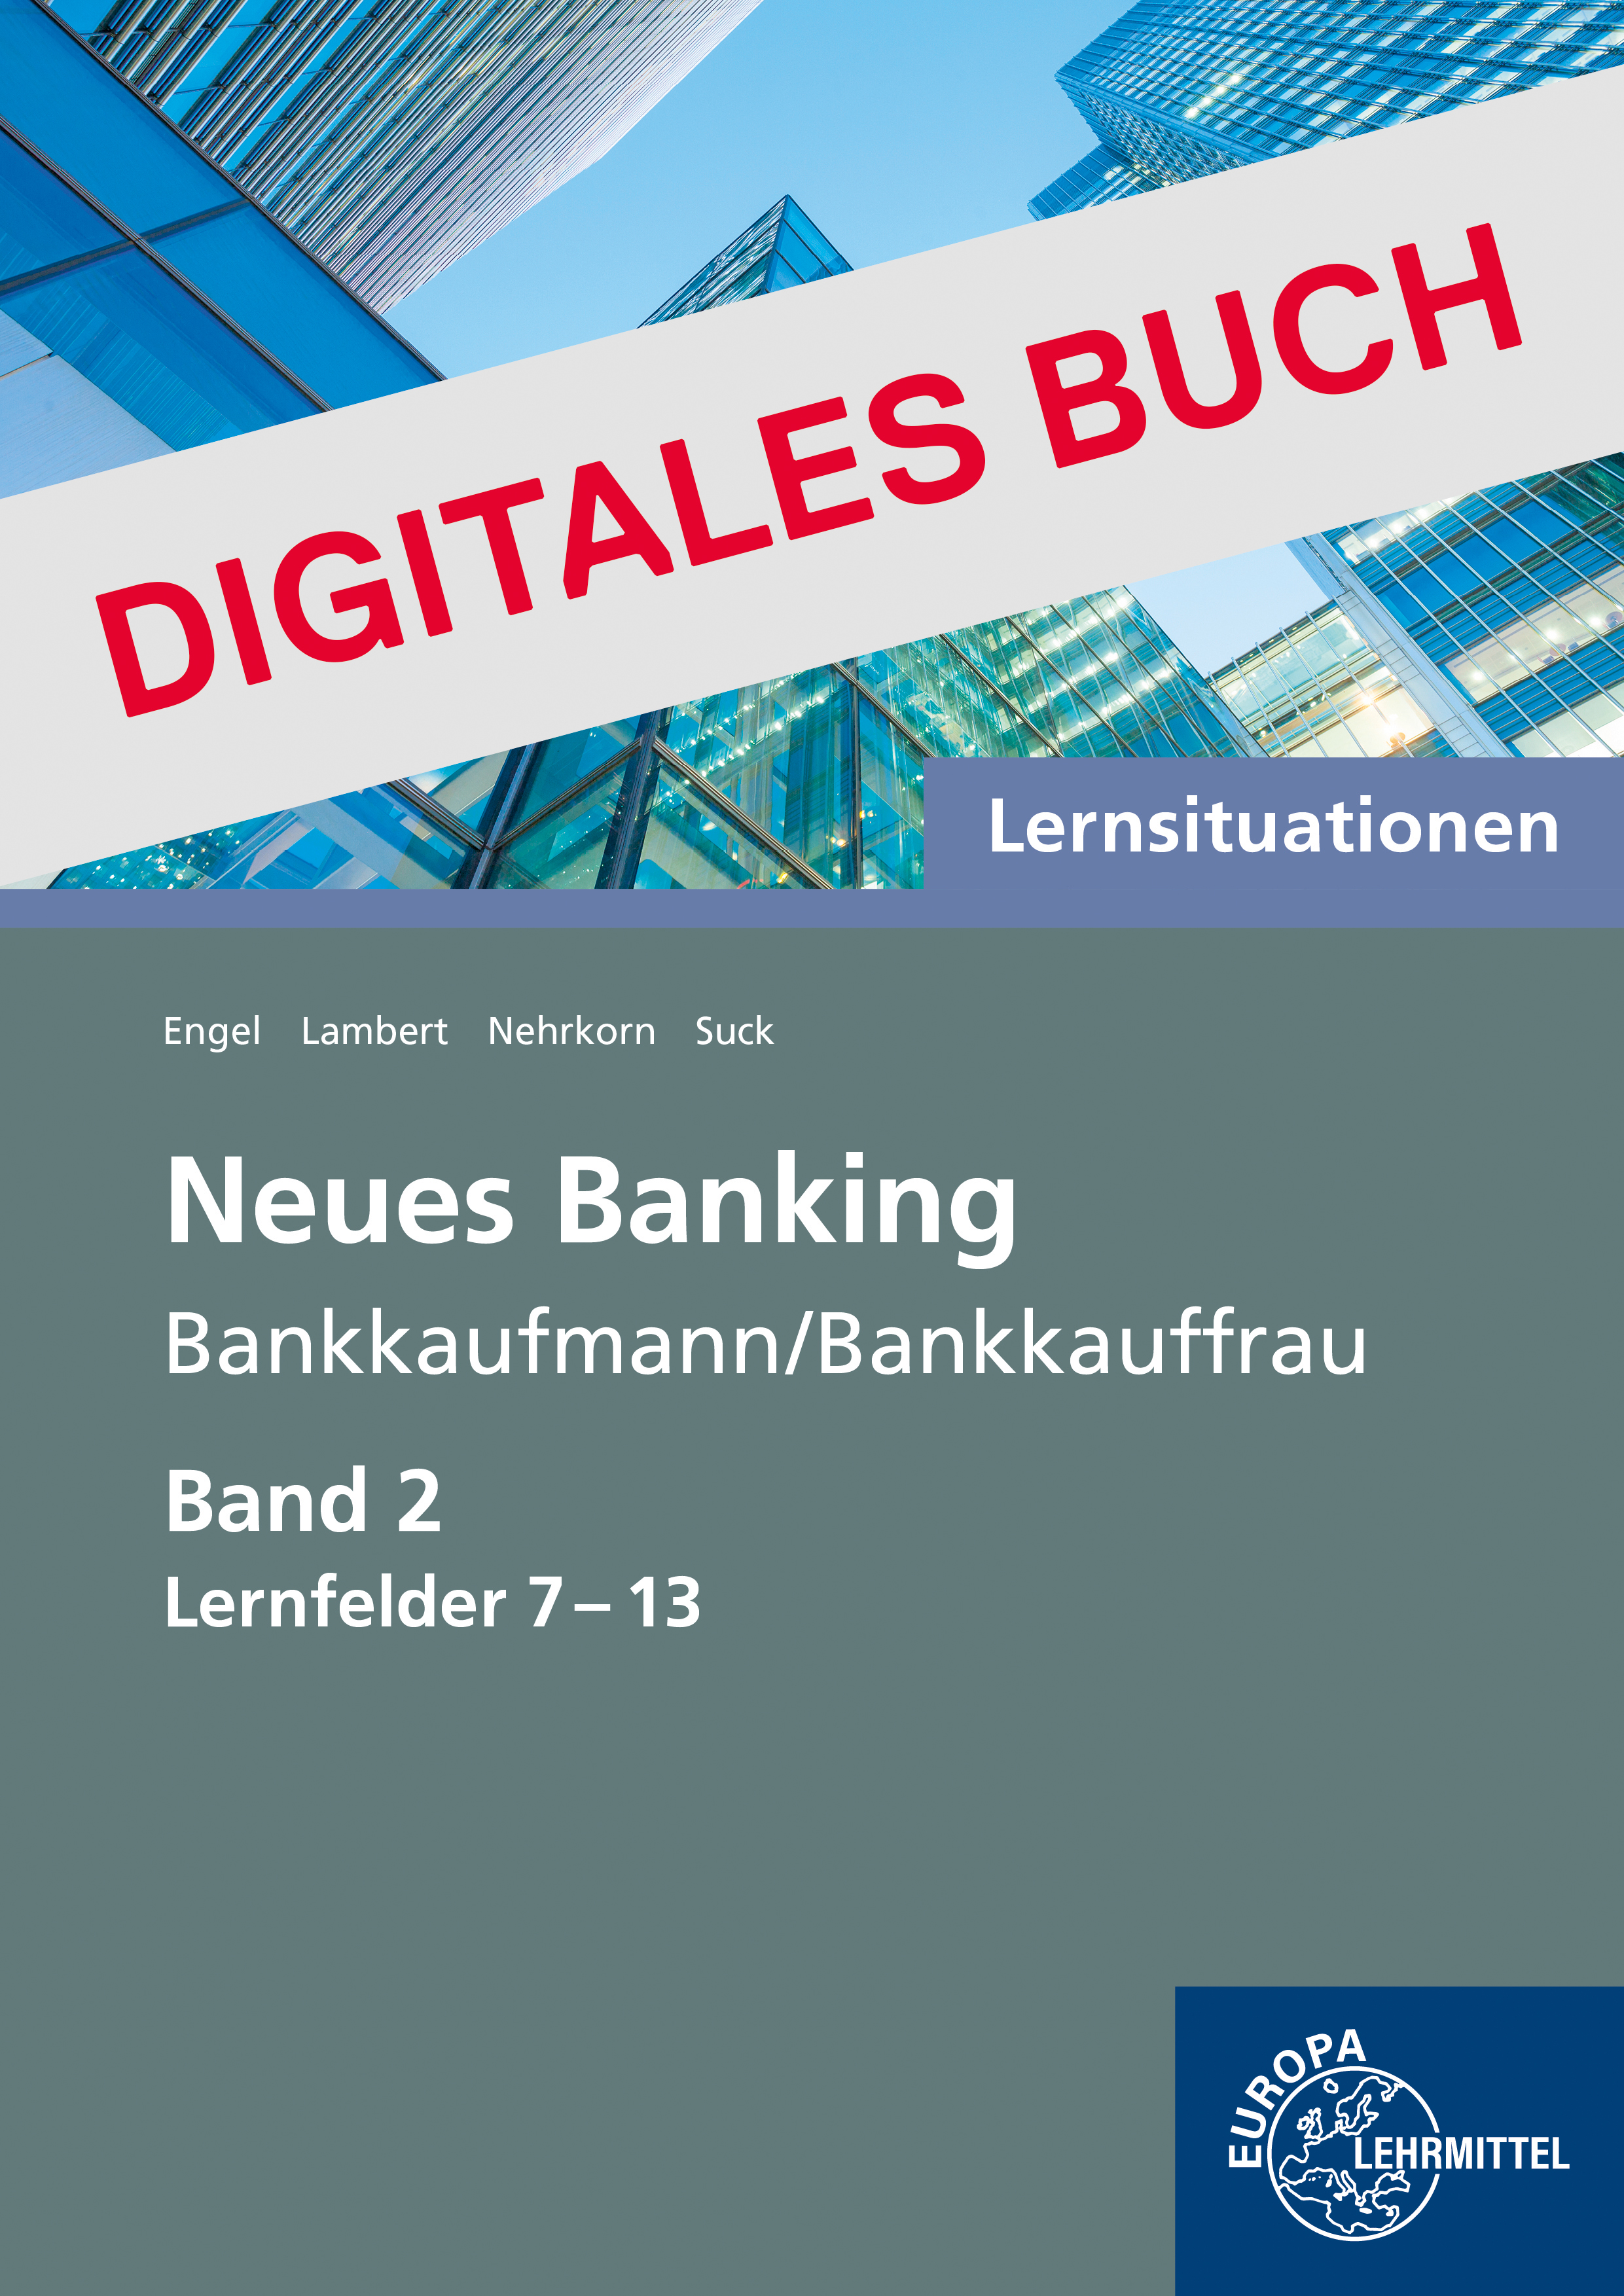 Lernsituationen Neues Banking Band 2 Lernfelder 7-13 - Digitales Buch